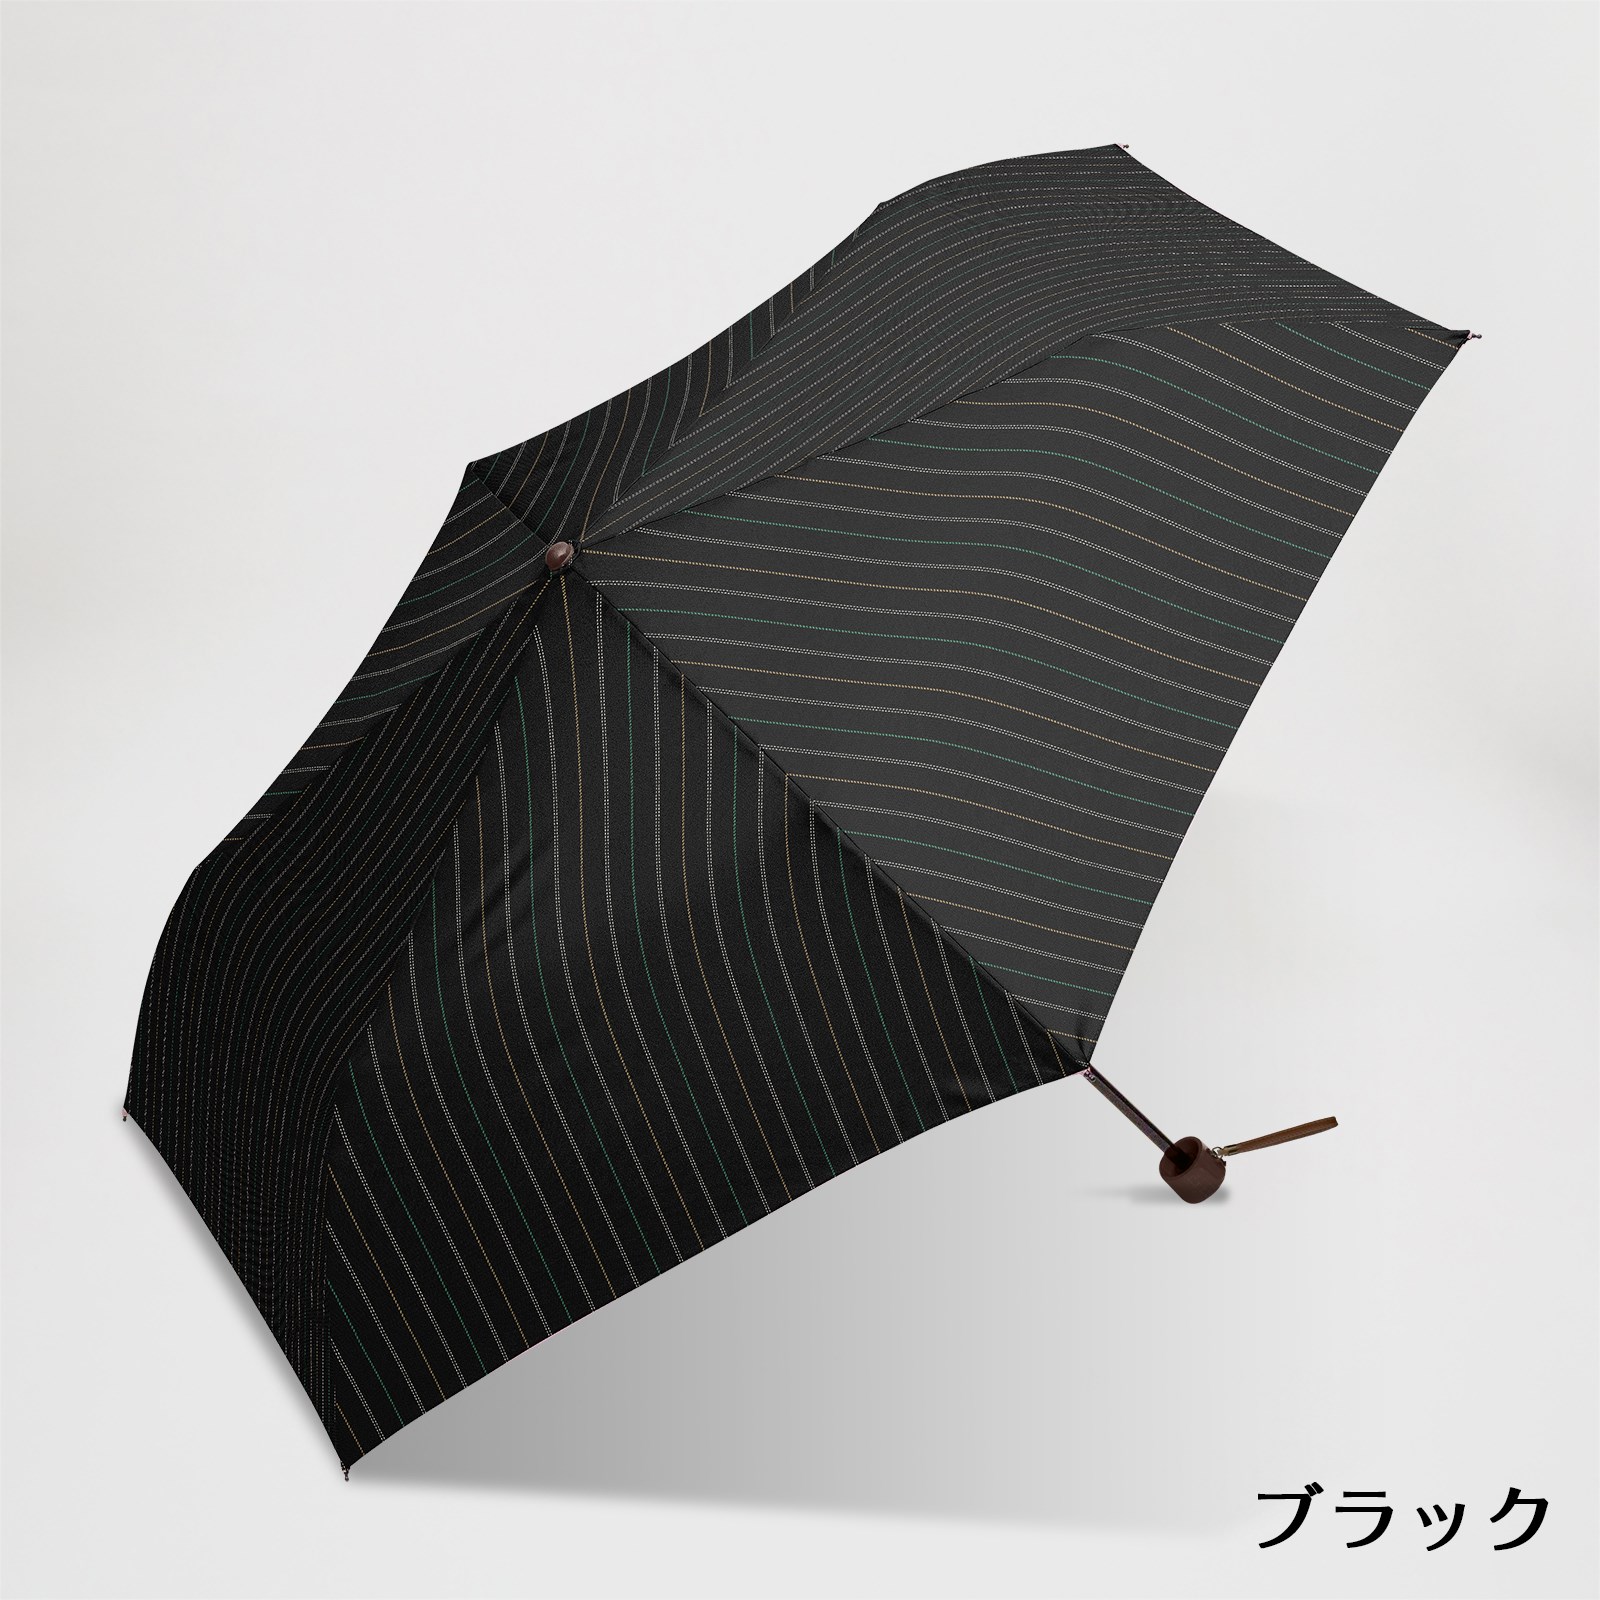 楽天市場】KENSHO ABE Homme / 折りたたみ傘 60cm コンパクト ツイル